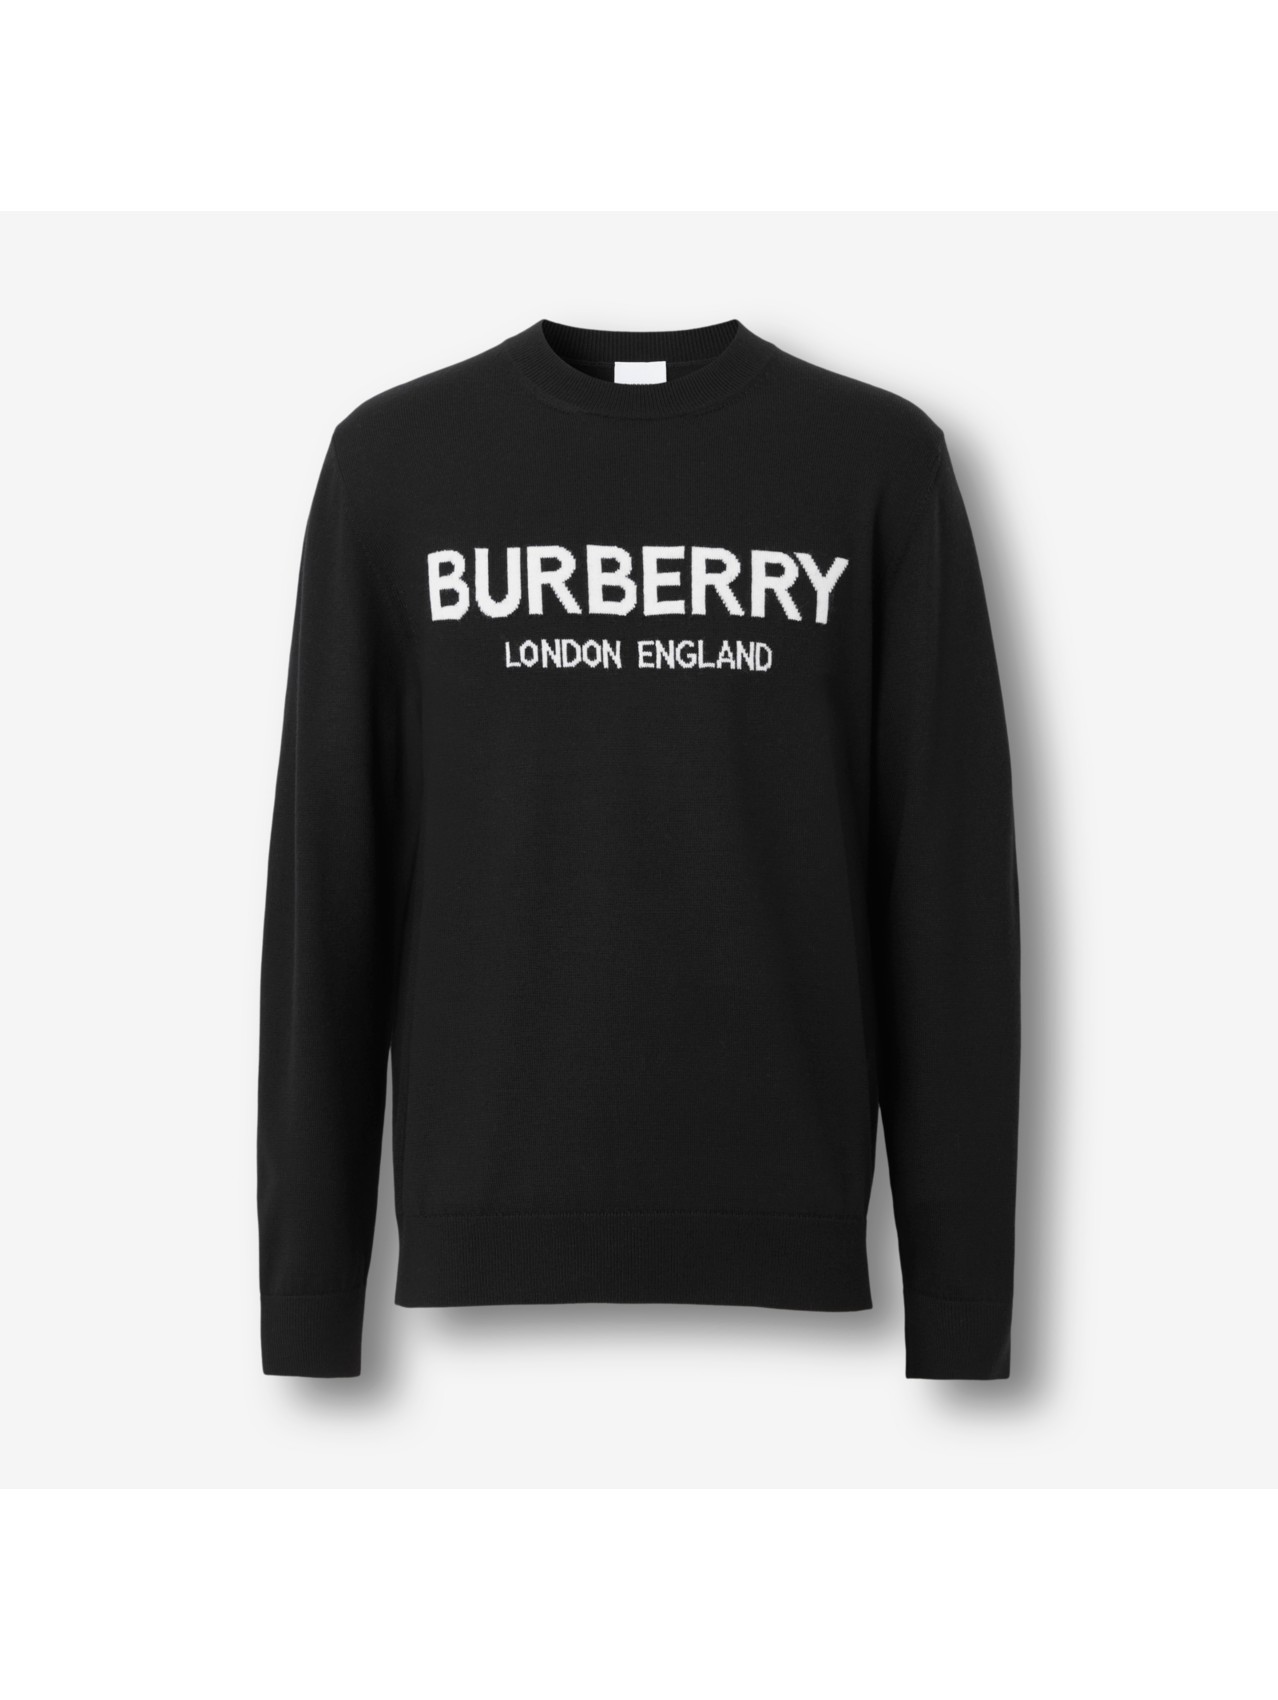 Actualizar 88+ imagen burberry mens sweatshirt sale